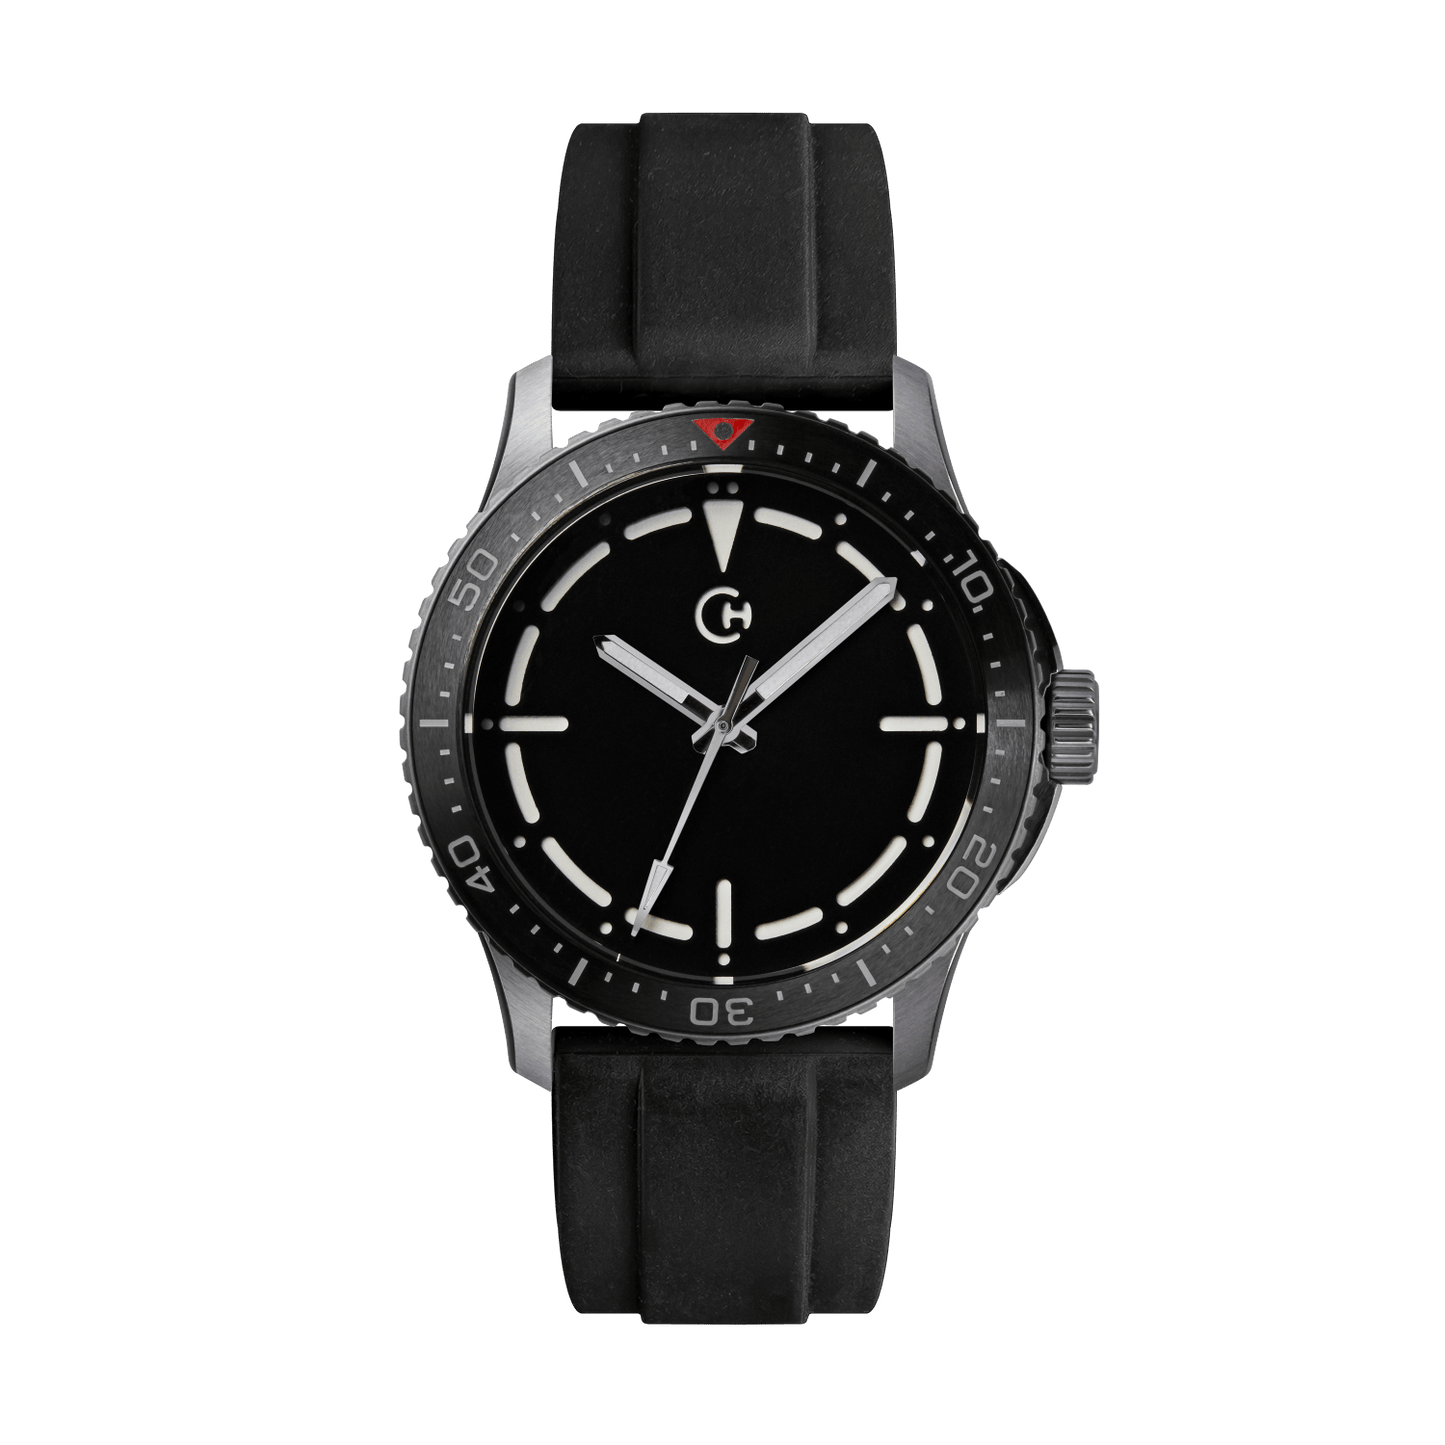 SeaQuest Dive černý gumový řemínek, 22mm, rychloupínací stěžejka, potápěčské hodinky Chronotechna bílý číselník, ocelové pouzdro